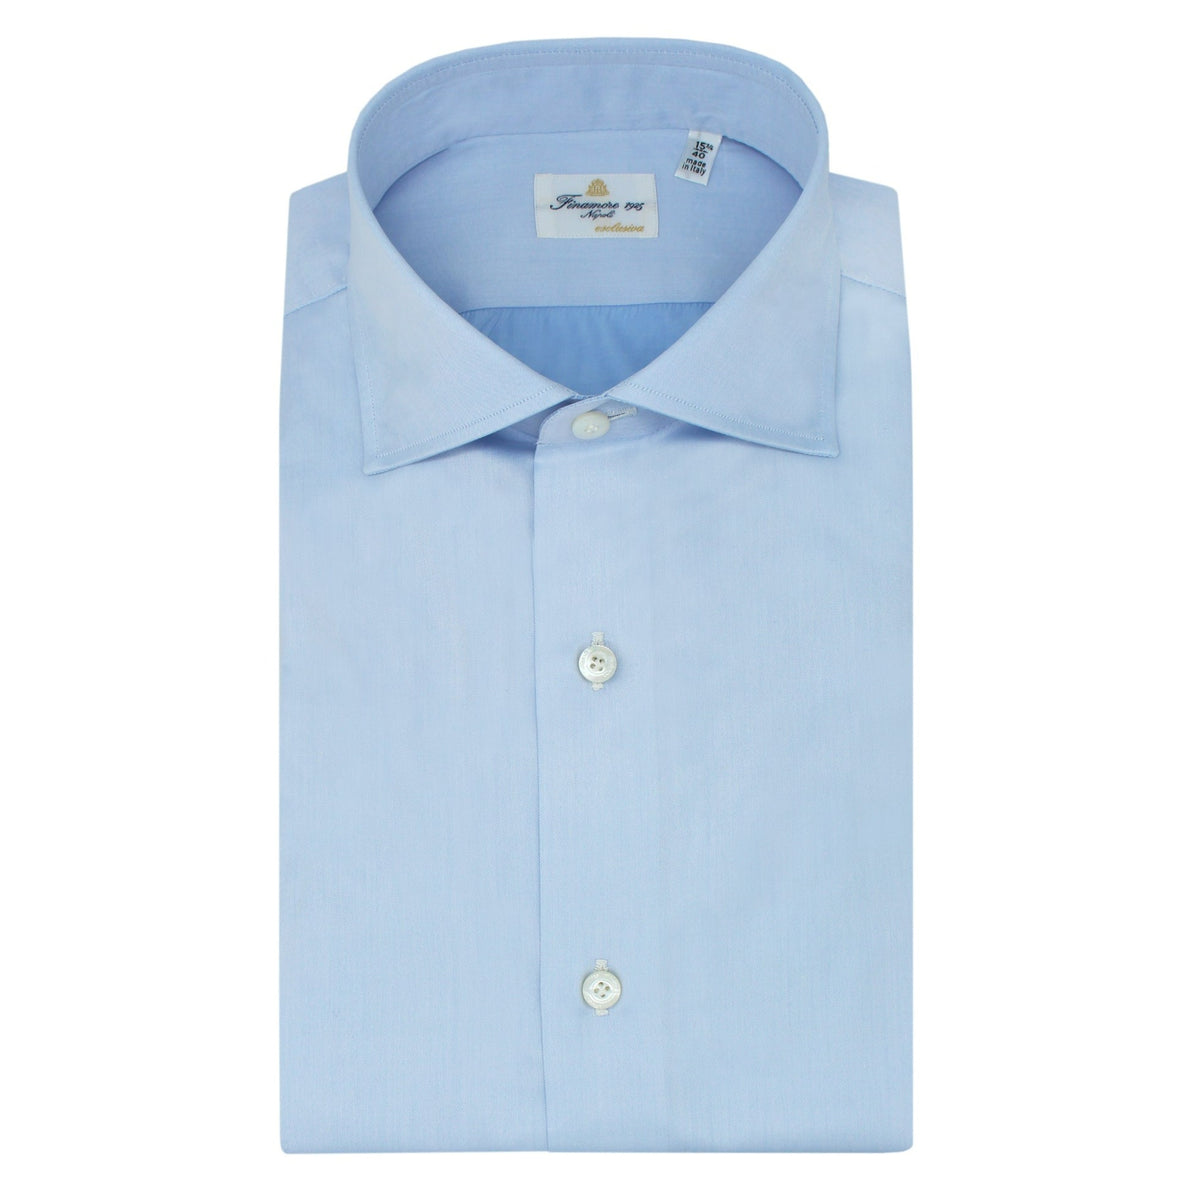 ESCLUSIVA classic shirt in white or light blu cotton Sea Island